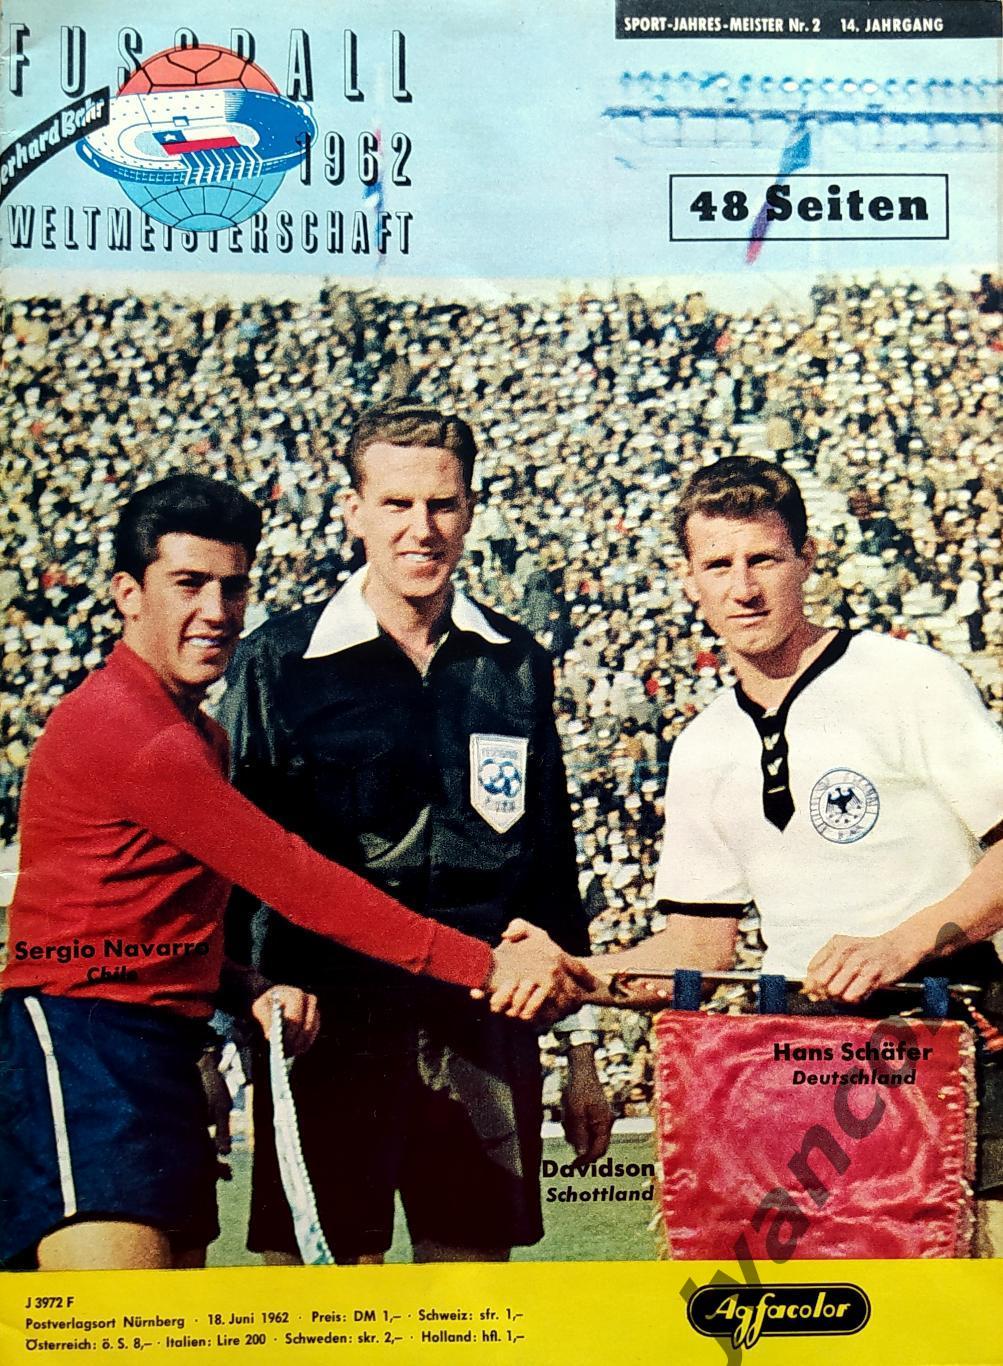 FUSSBALL-1962 Weltmeisterschaft / Чемпионат Мира по футболу в Чили 1962 года.